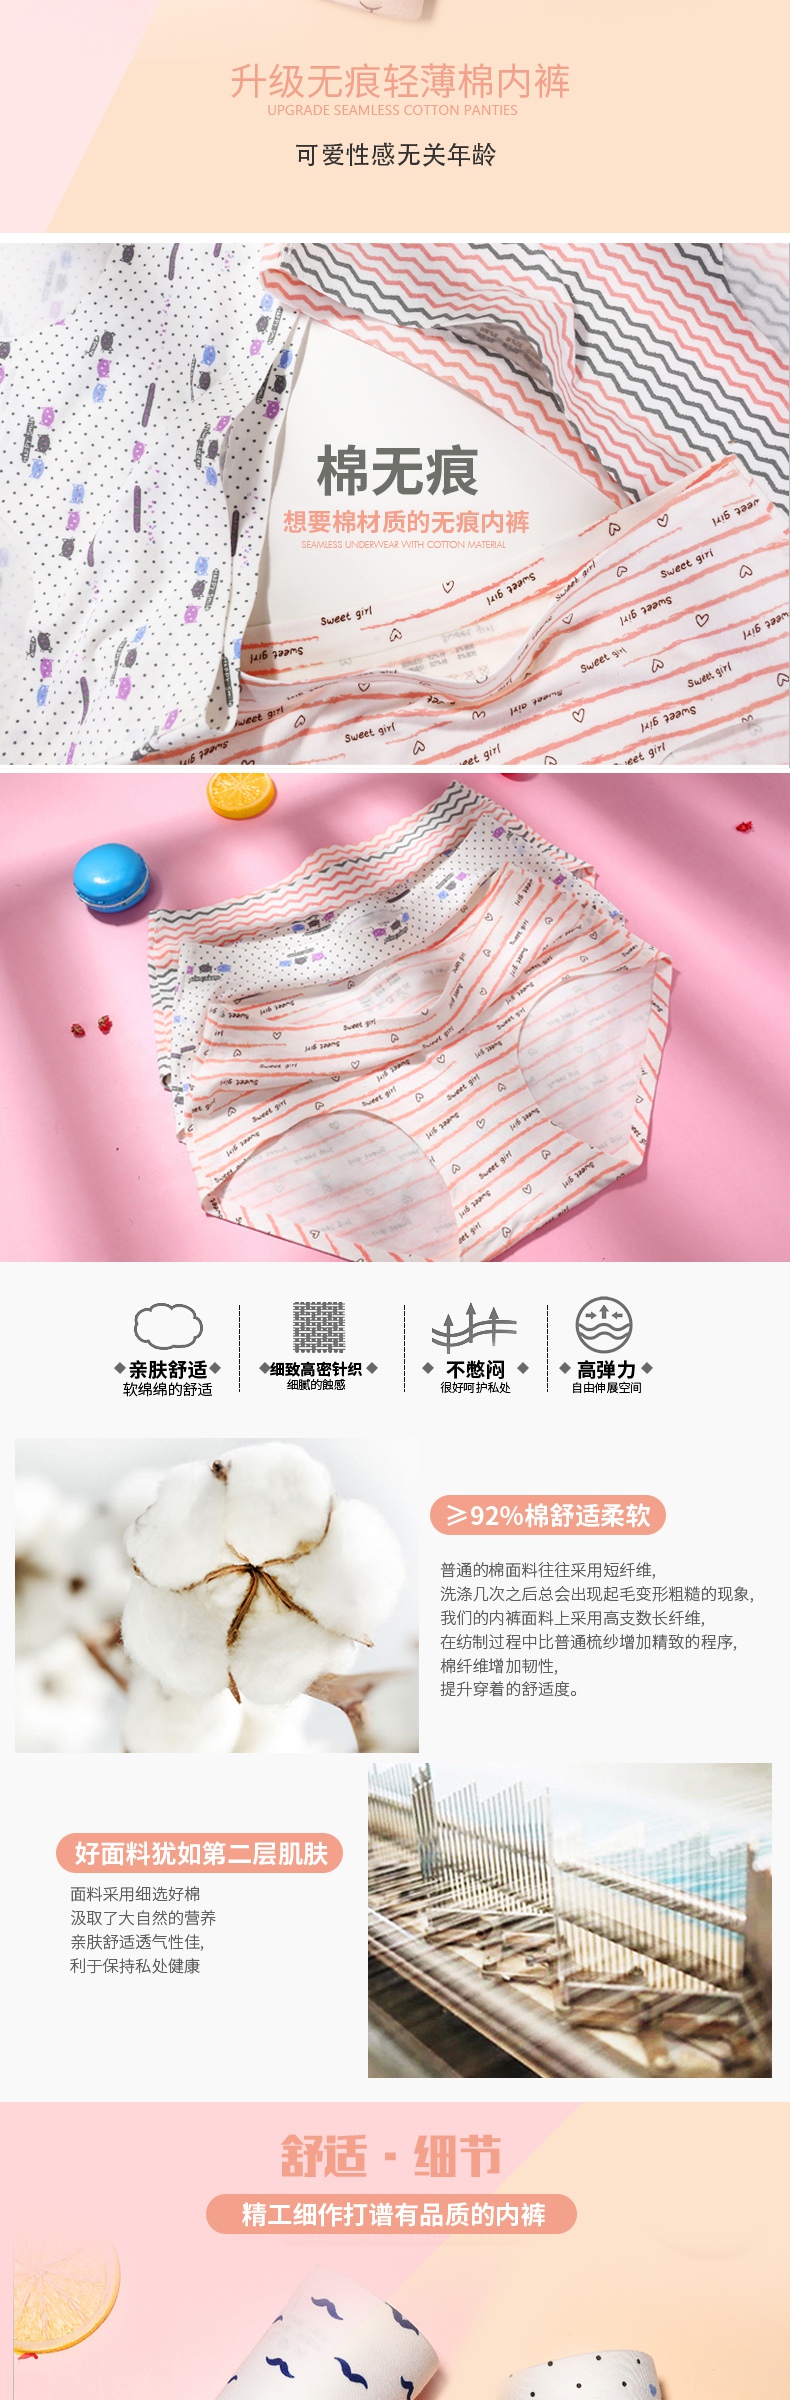 简约清新女式糖果色内裤活动详情页模板